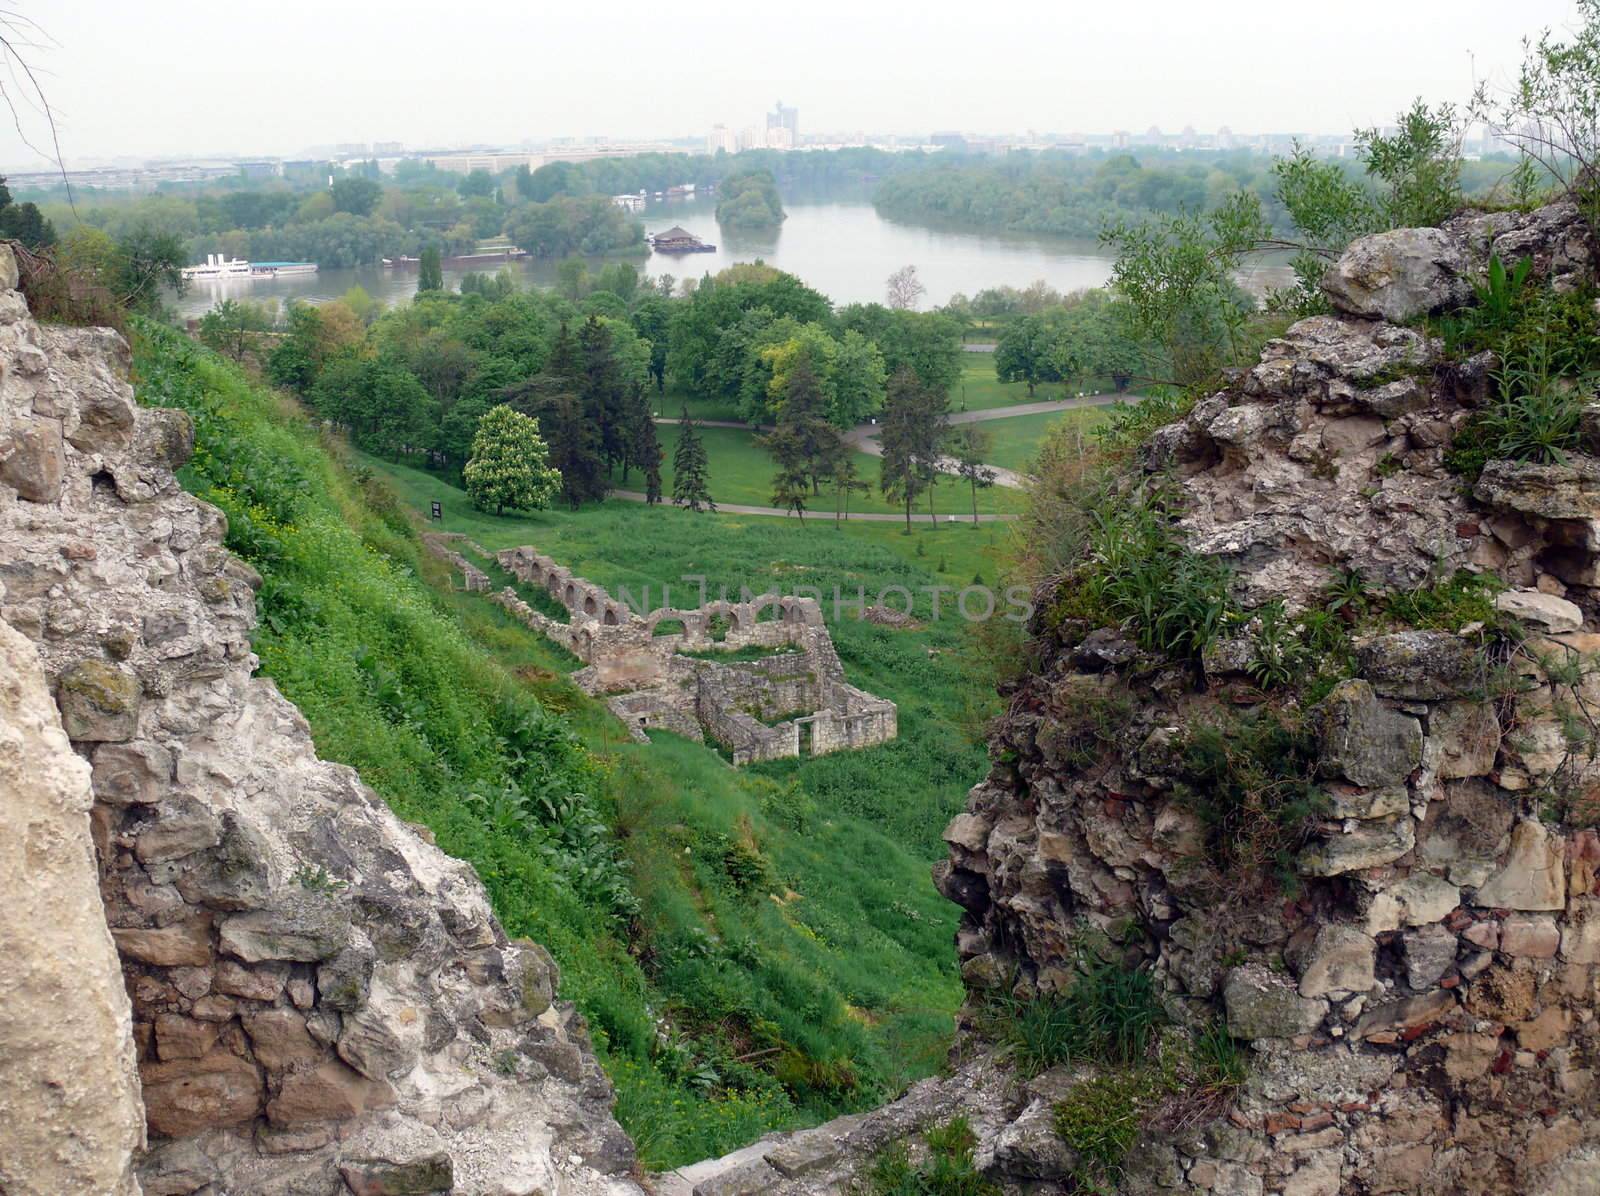 Fortress Kalemegdan in Belgrade, Serbia